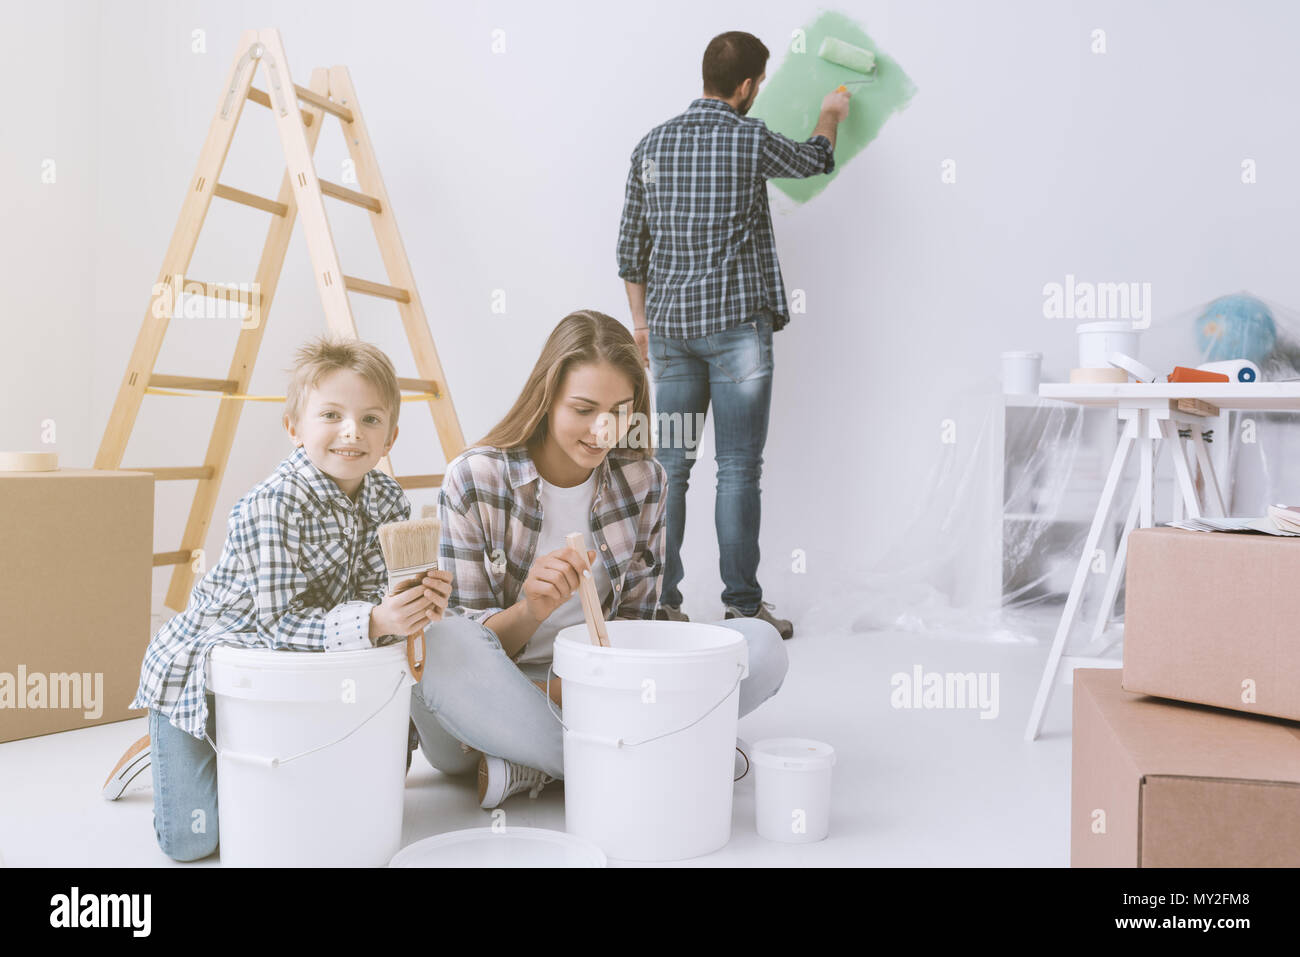 Jeune famille faire un Home makeover et peinture, le père est peinture des murs avec un rouleau à peindre, la mère et son fils sont en remuant en peinture Banque D'Images